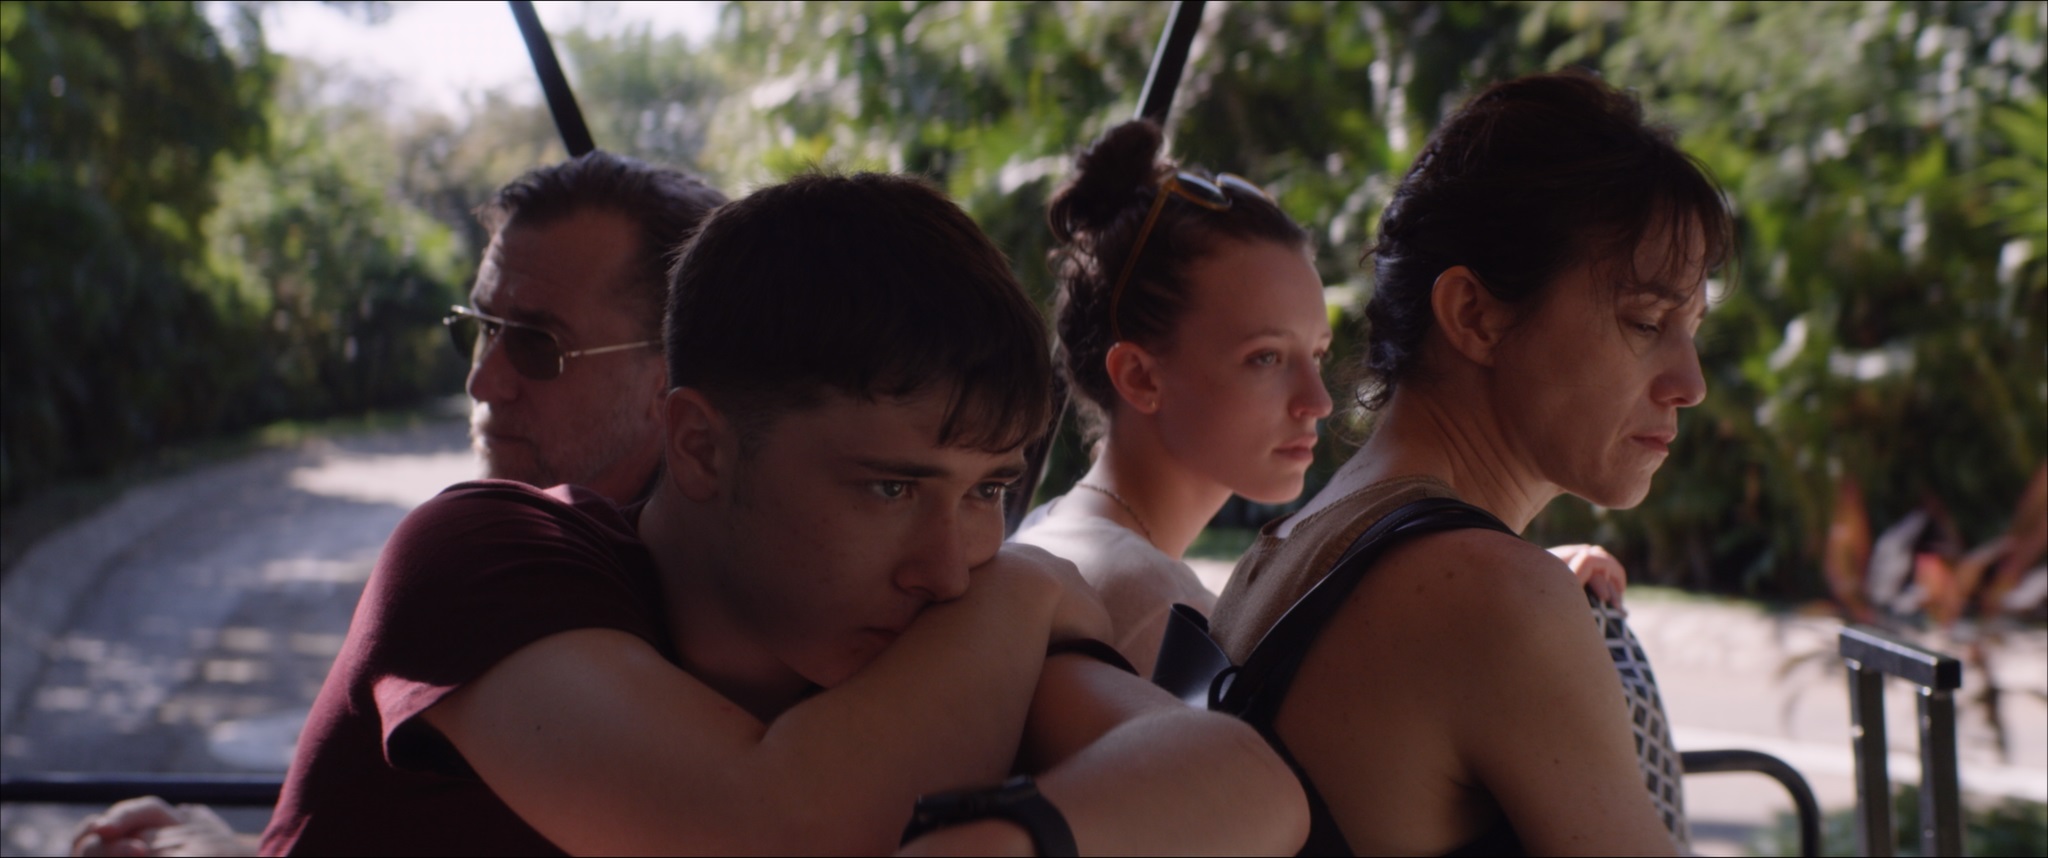 Камю и мексиканские пляжи: зачем смотреть фильм «Закат» с Тимом Ротом и Шарлоттой Генсбур (фото 2)